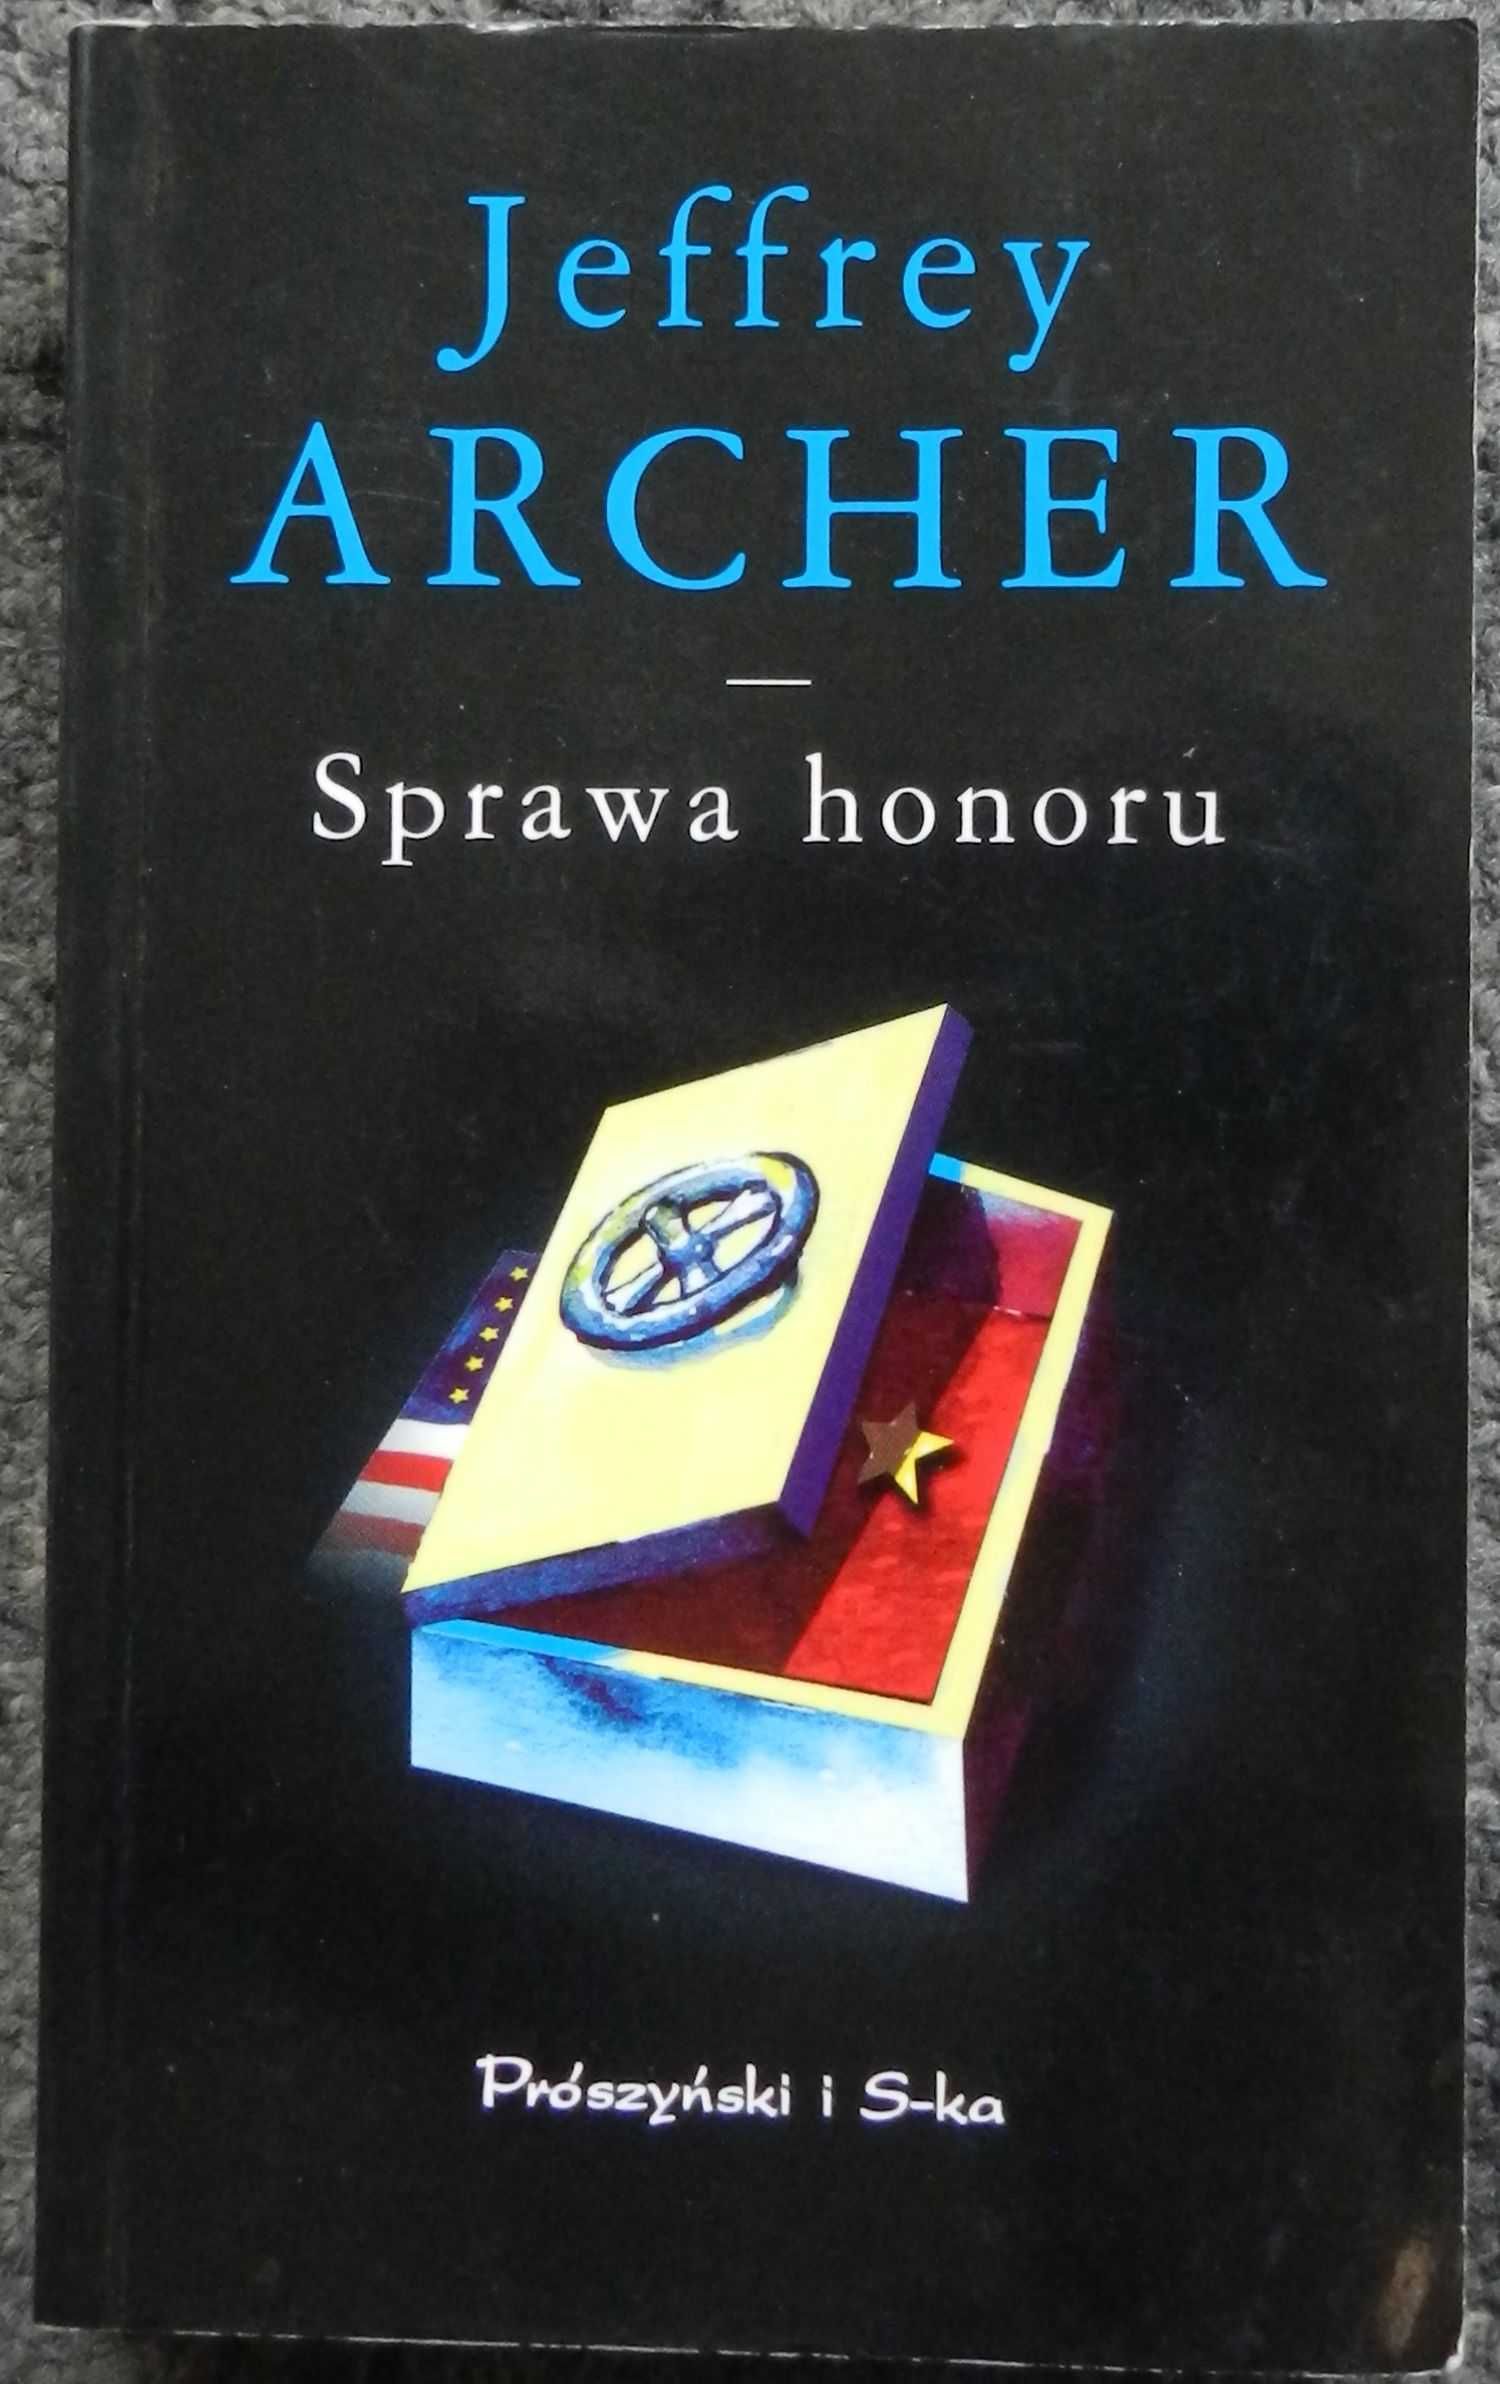 Archer Jeffrey - Sprawa honoru, wyd. kieszonkowe/pocket